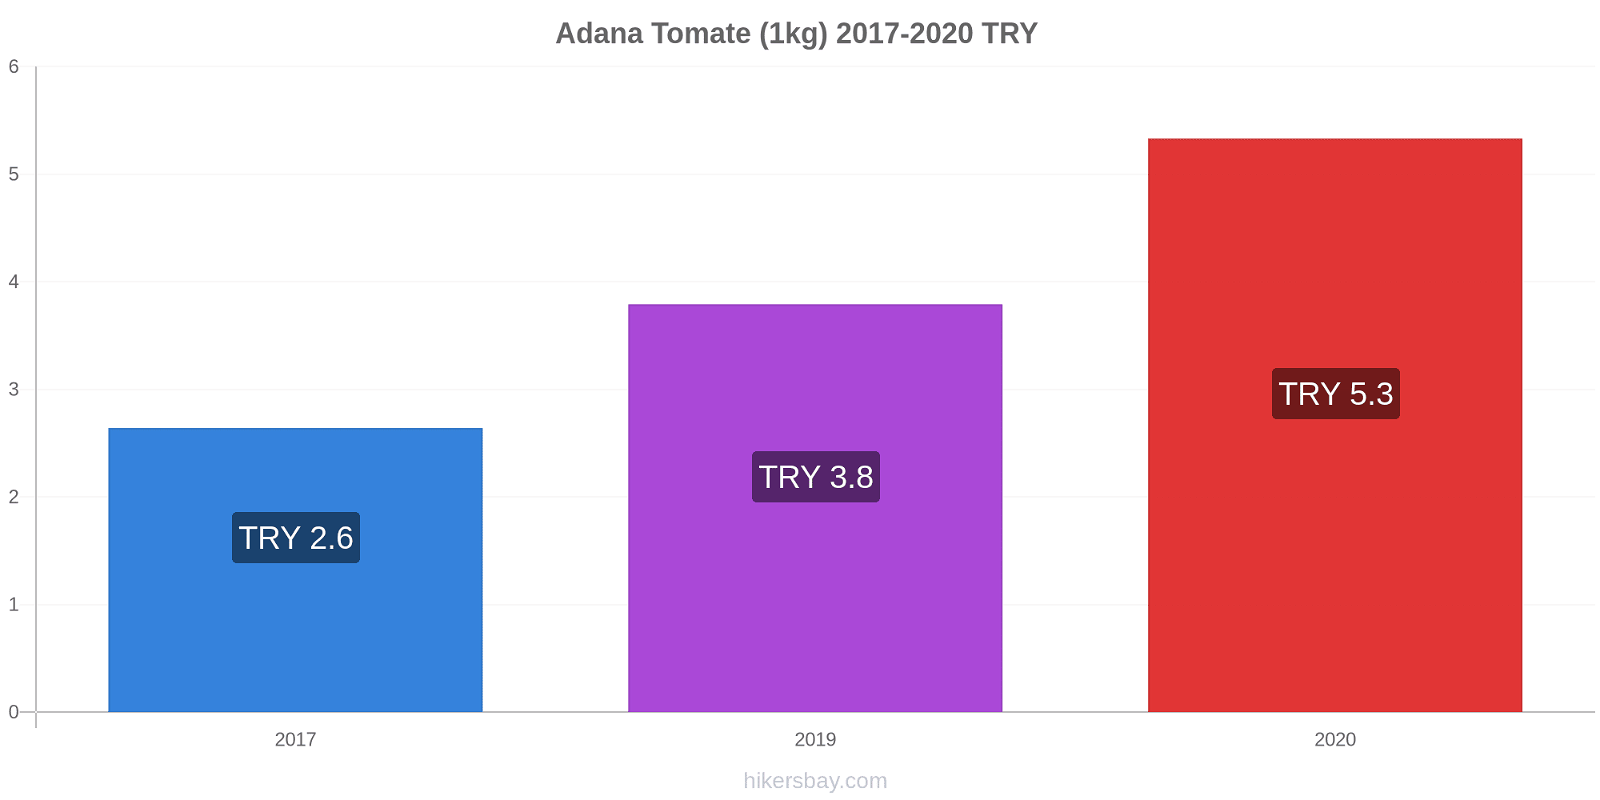 Adana cambios de precios Tomate (1kg) hikersbay.com